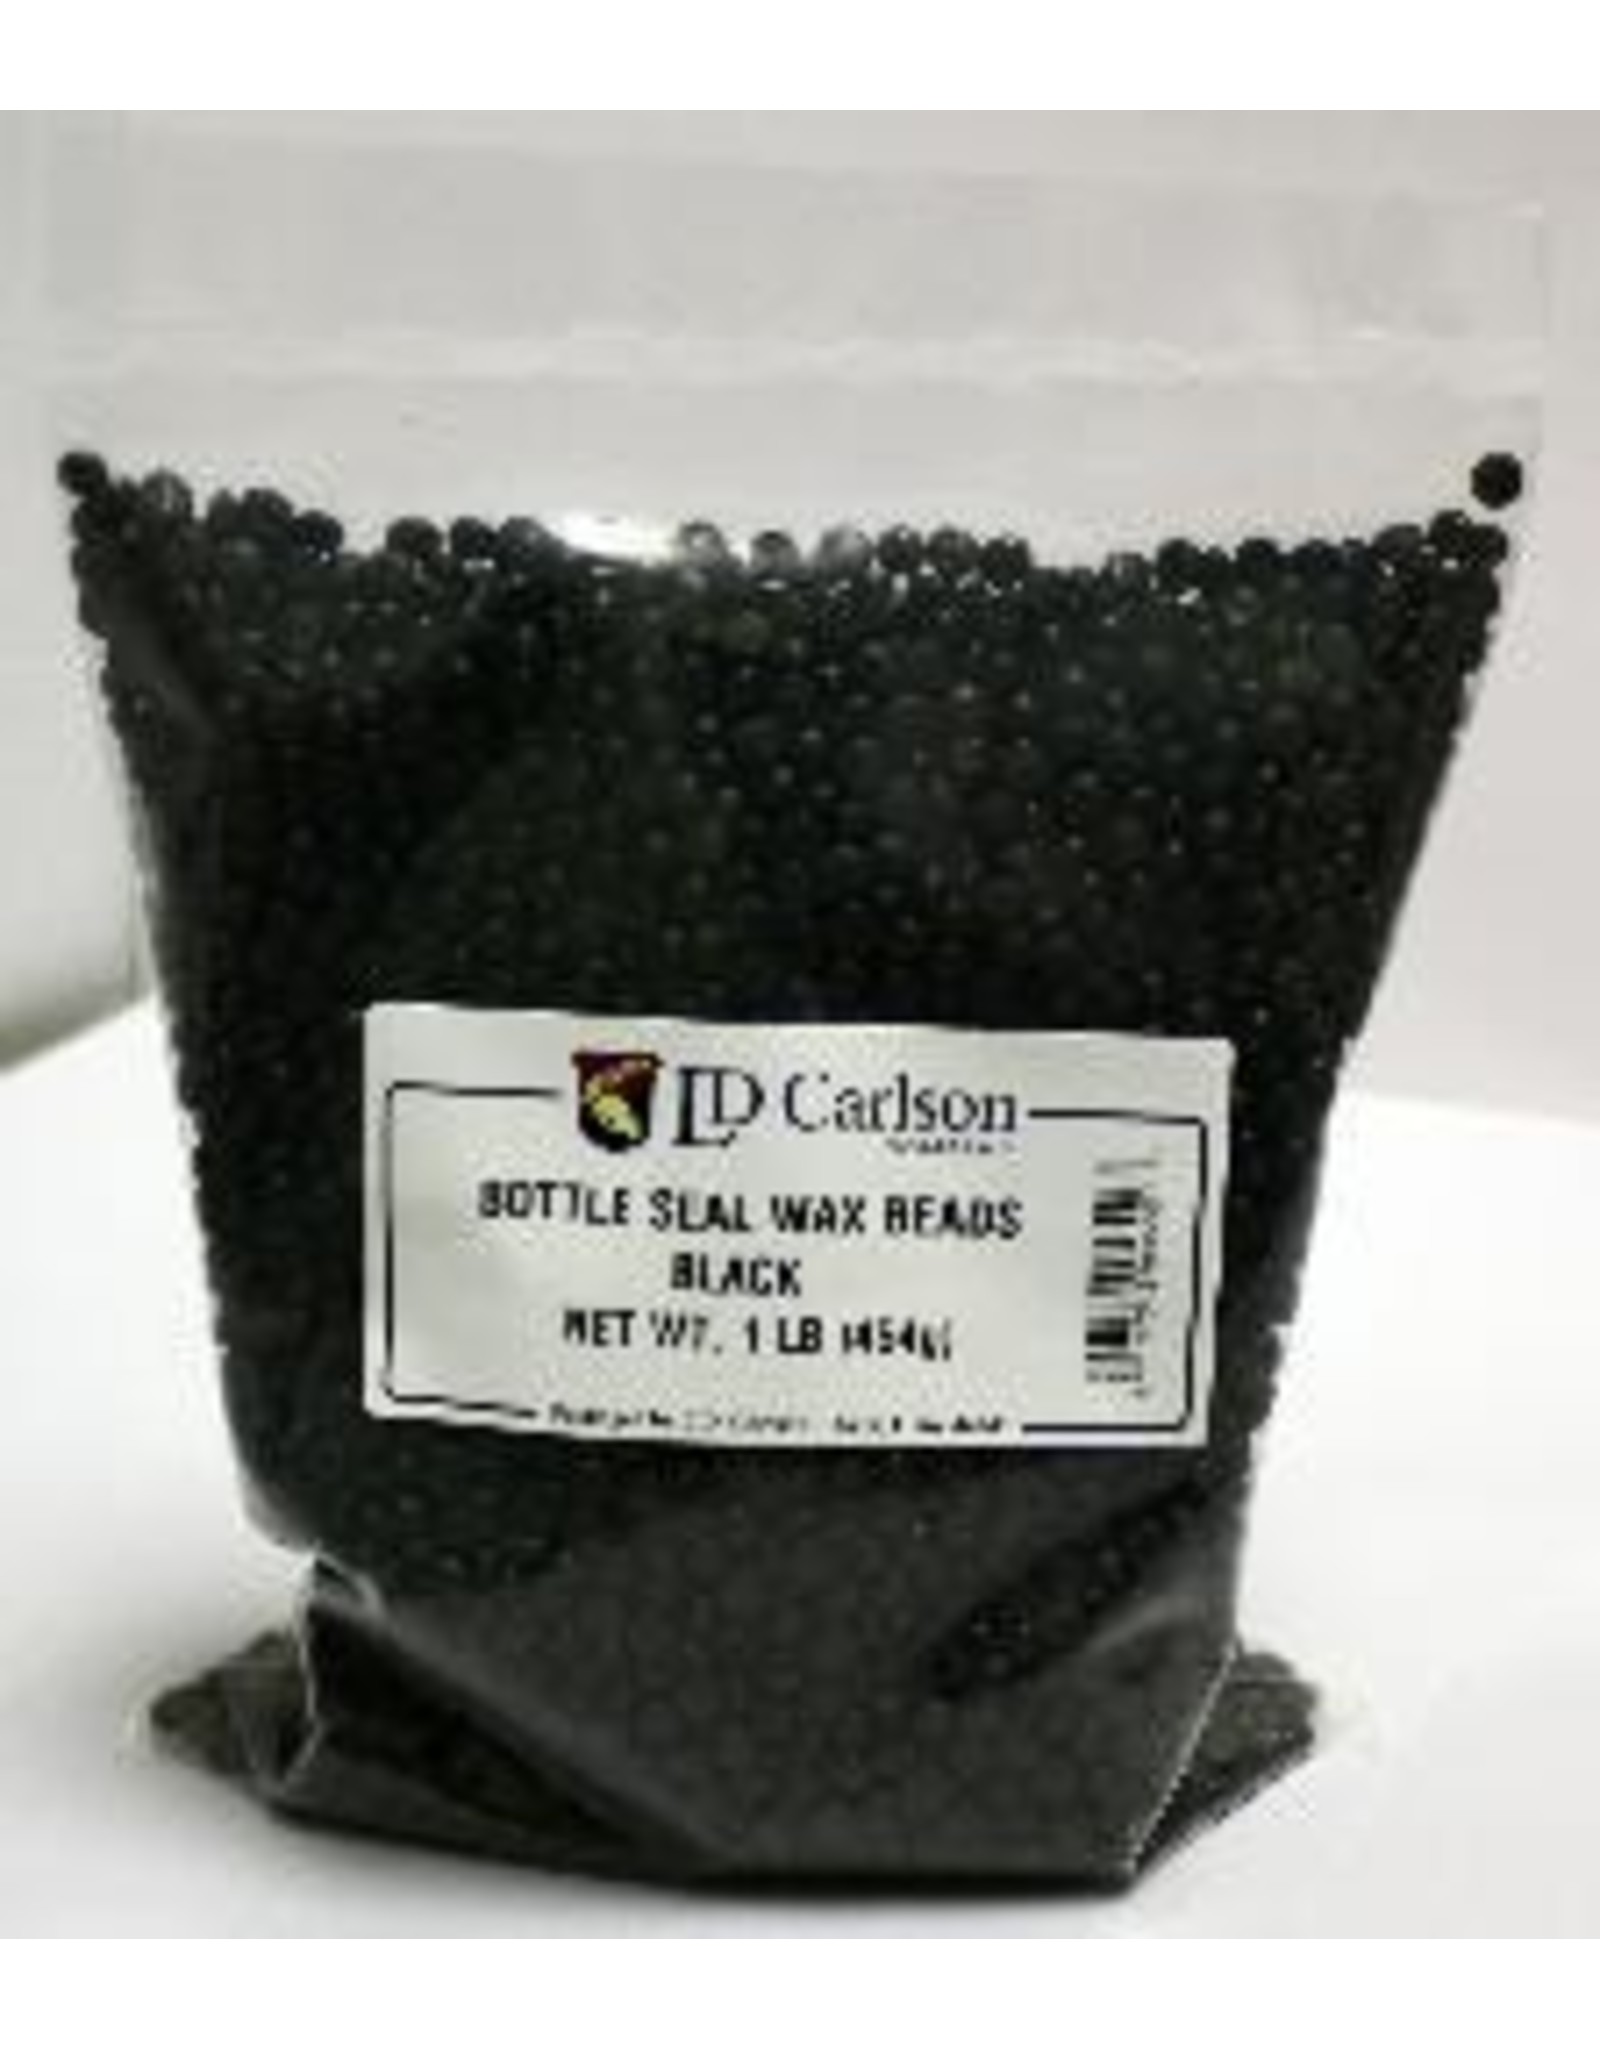 Black Bottle Seal Wax